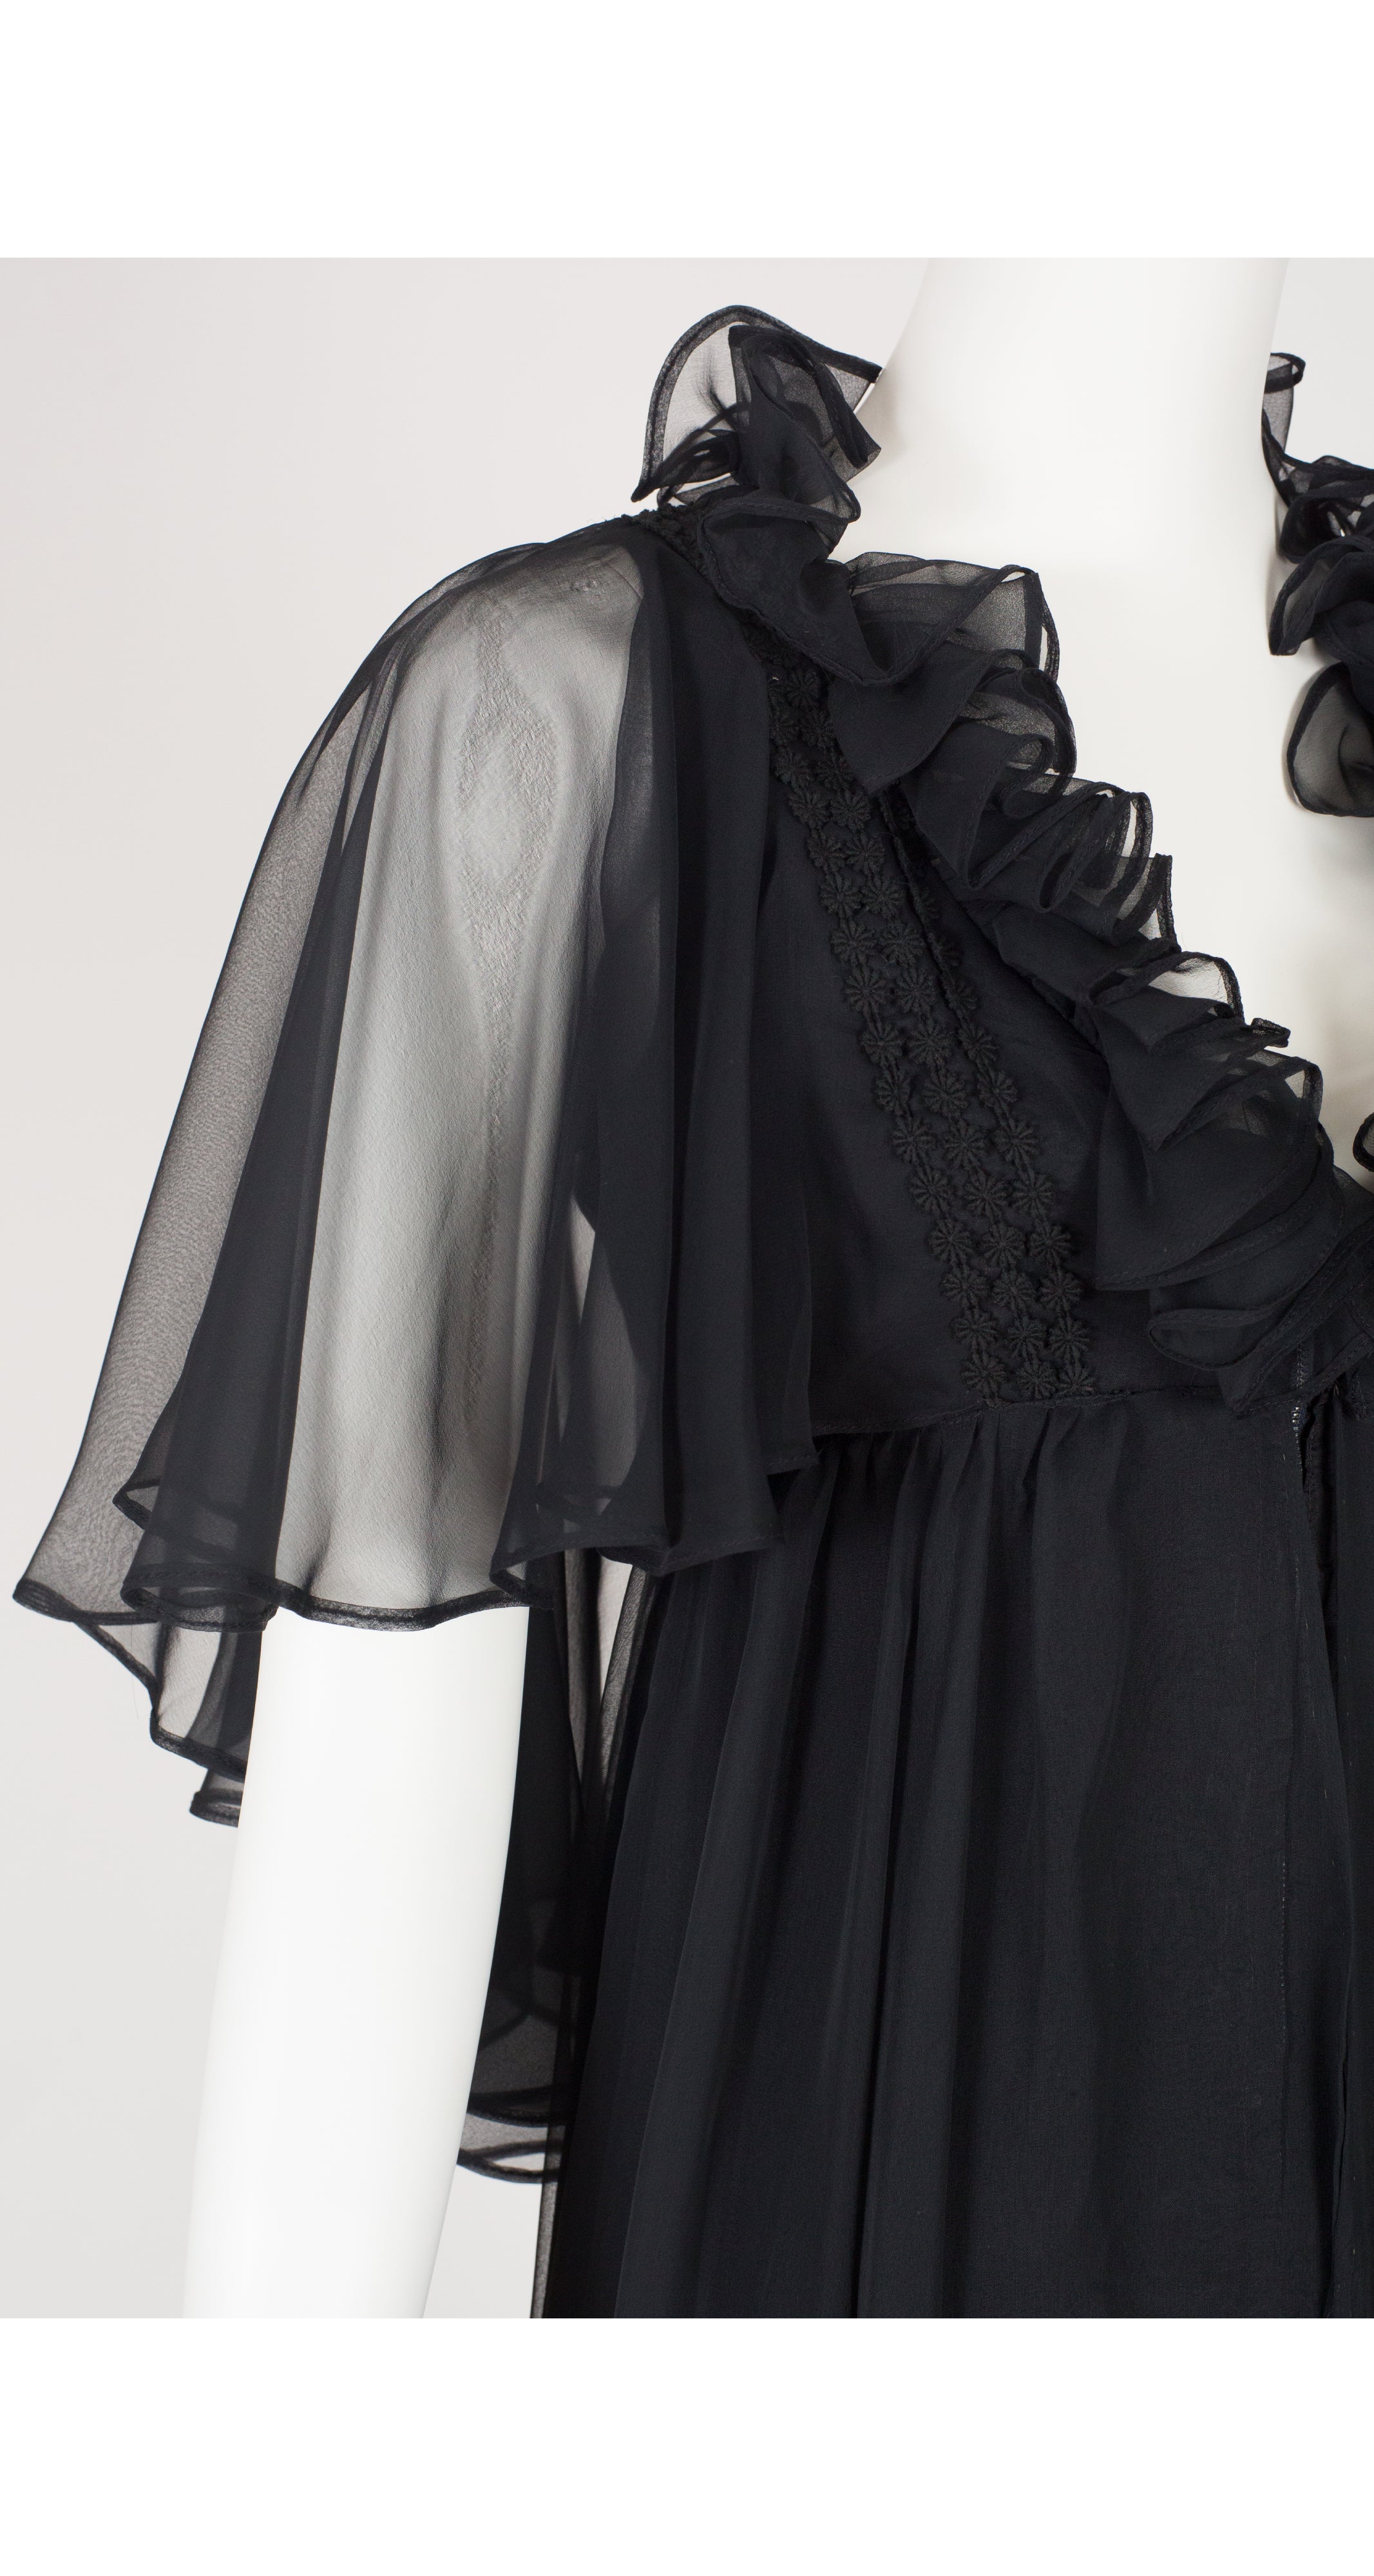 1970s Black Chiffon Ruffle Evening Gown